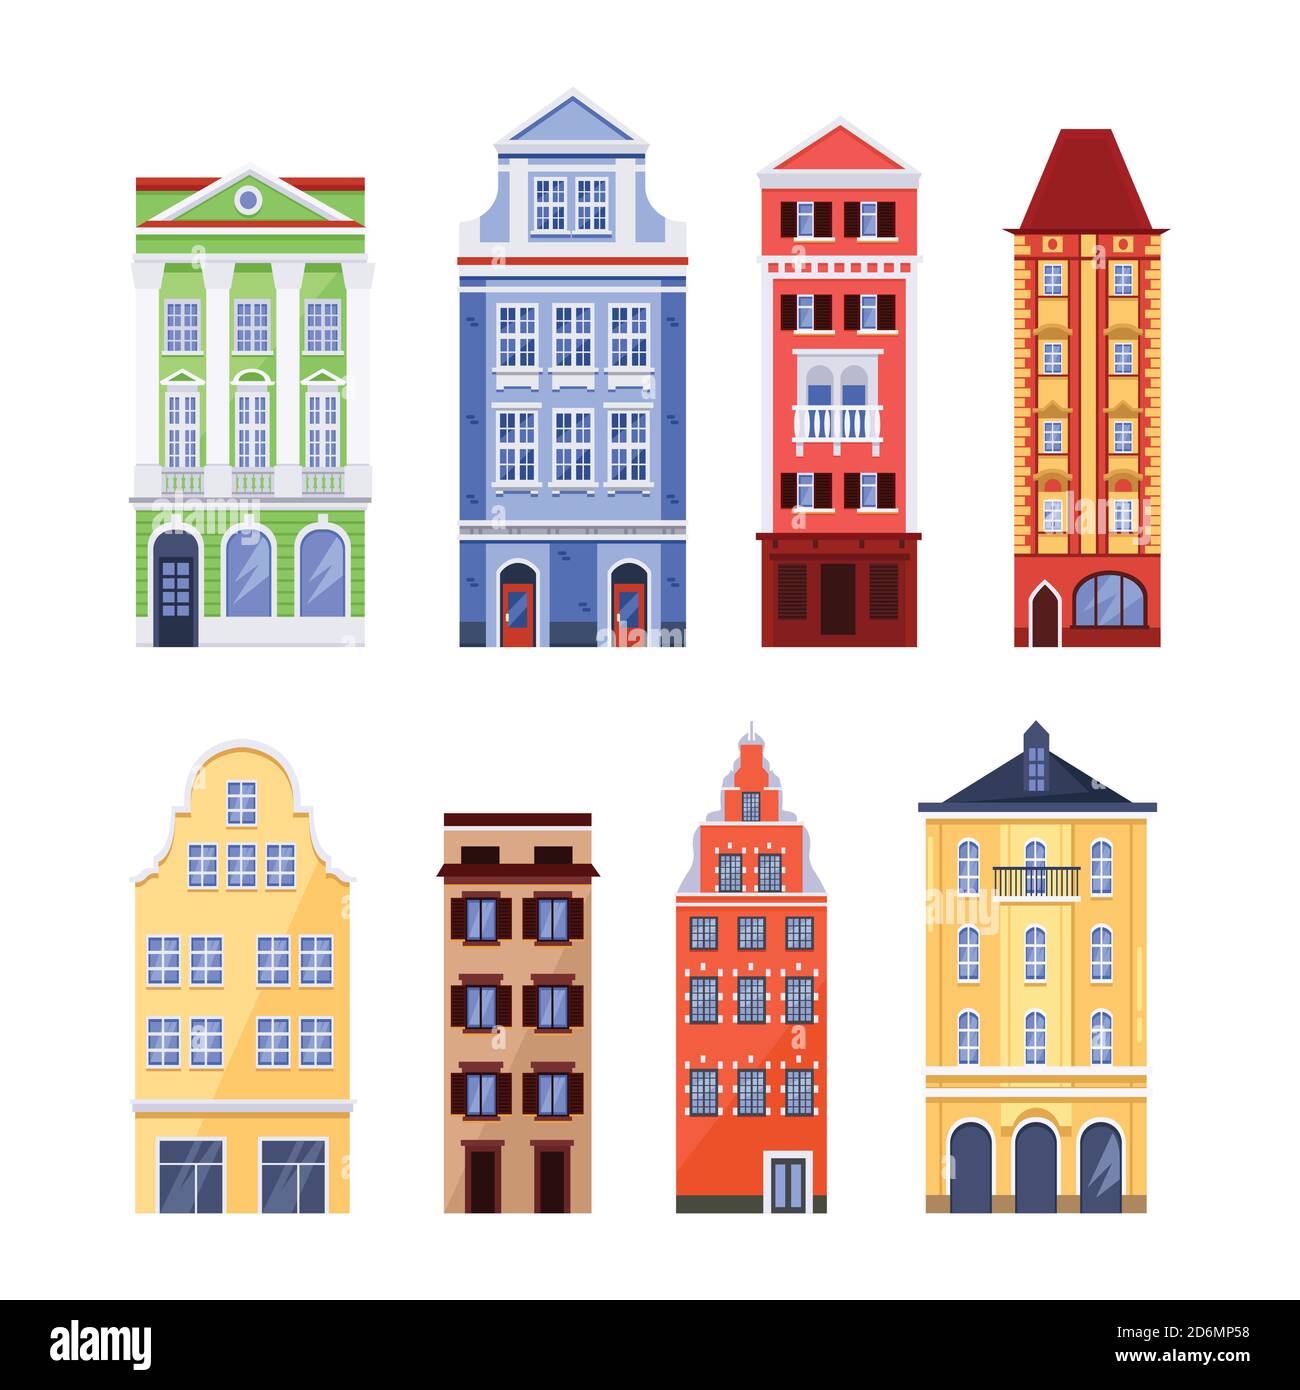 Vieux bâtiments colorés, illustration vectorielle isolée à plat. Façades de maisons traditionnelles européennes. Éléments de conception de l'architecture urbaine. Illustration de Vecteur